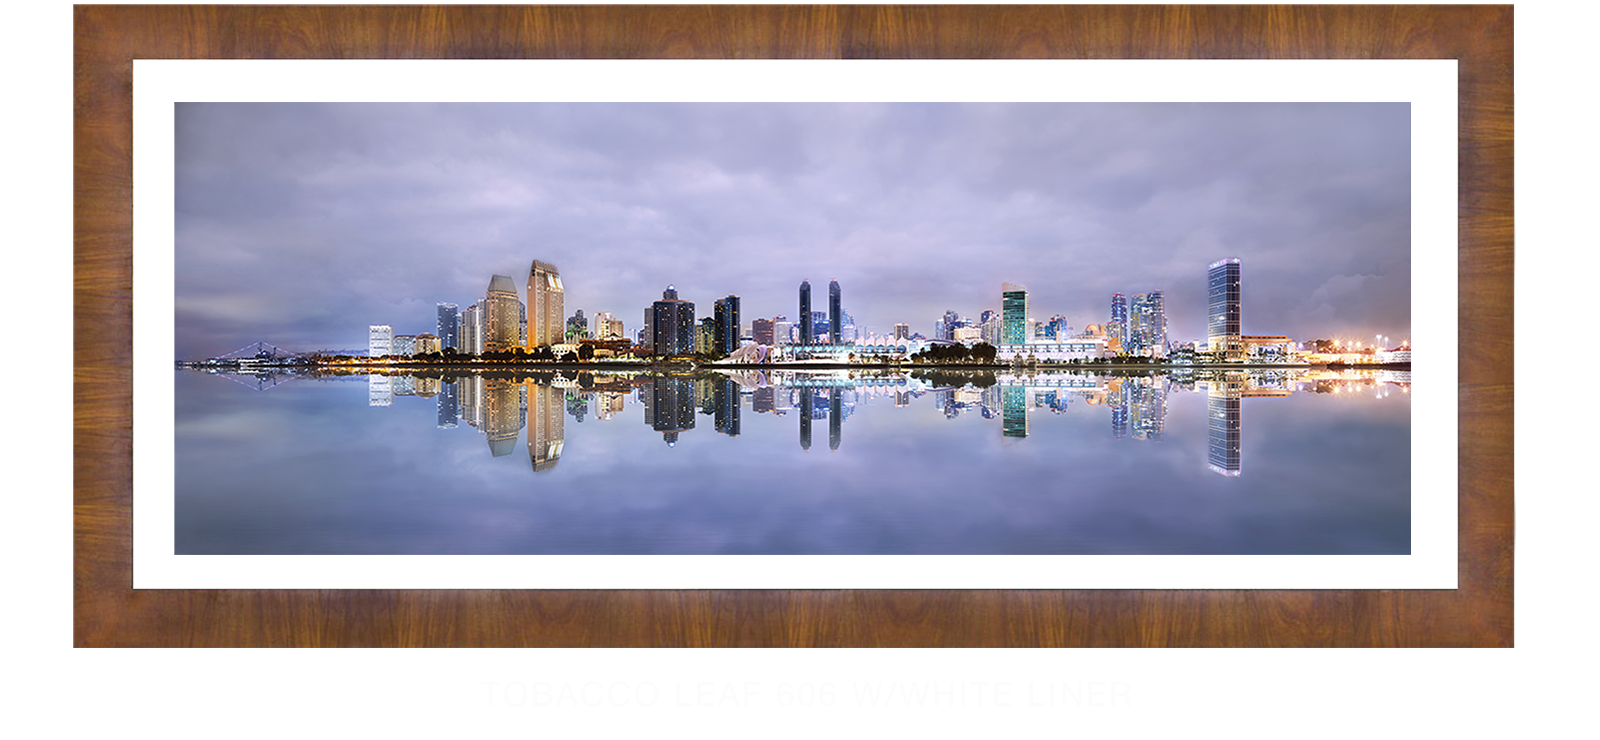 24INTERLUDE DIEGO Tobacco Leaf 606 w_Wht Liner T